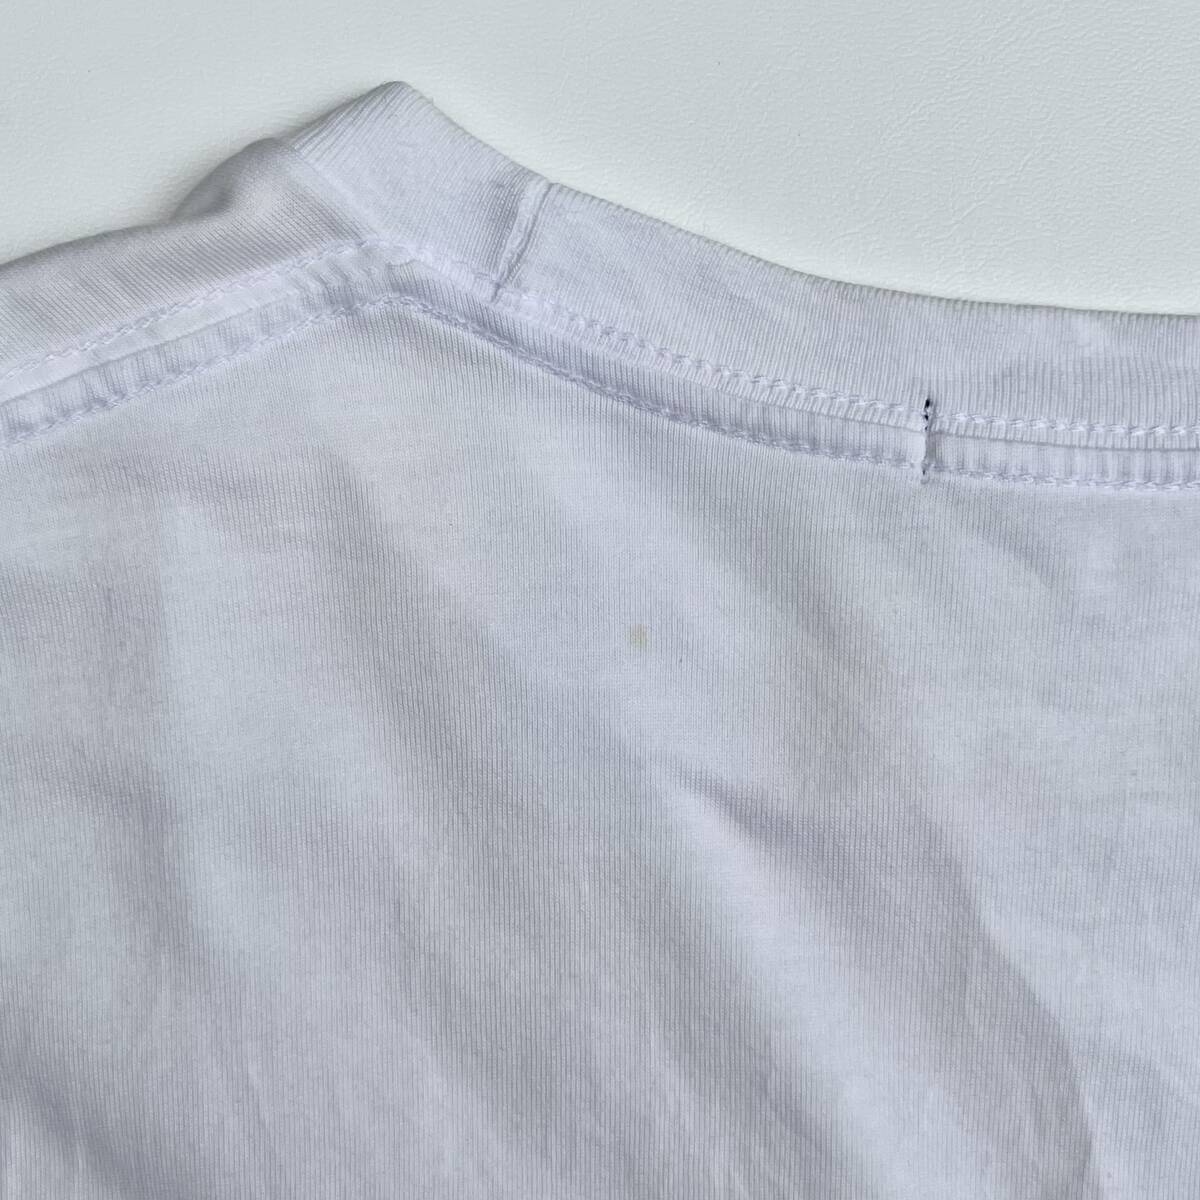 UNDERCOVERISM アンダーカバーイズム Mサイズ Uロゴ Tシャツ 半袖 花柄 ホワイト